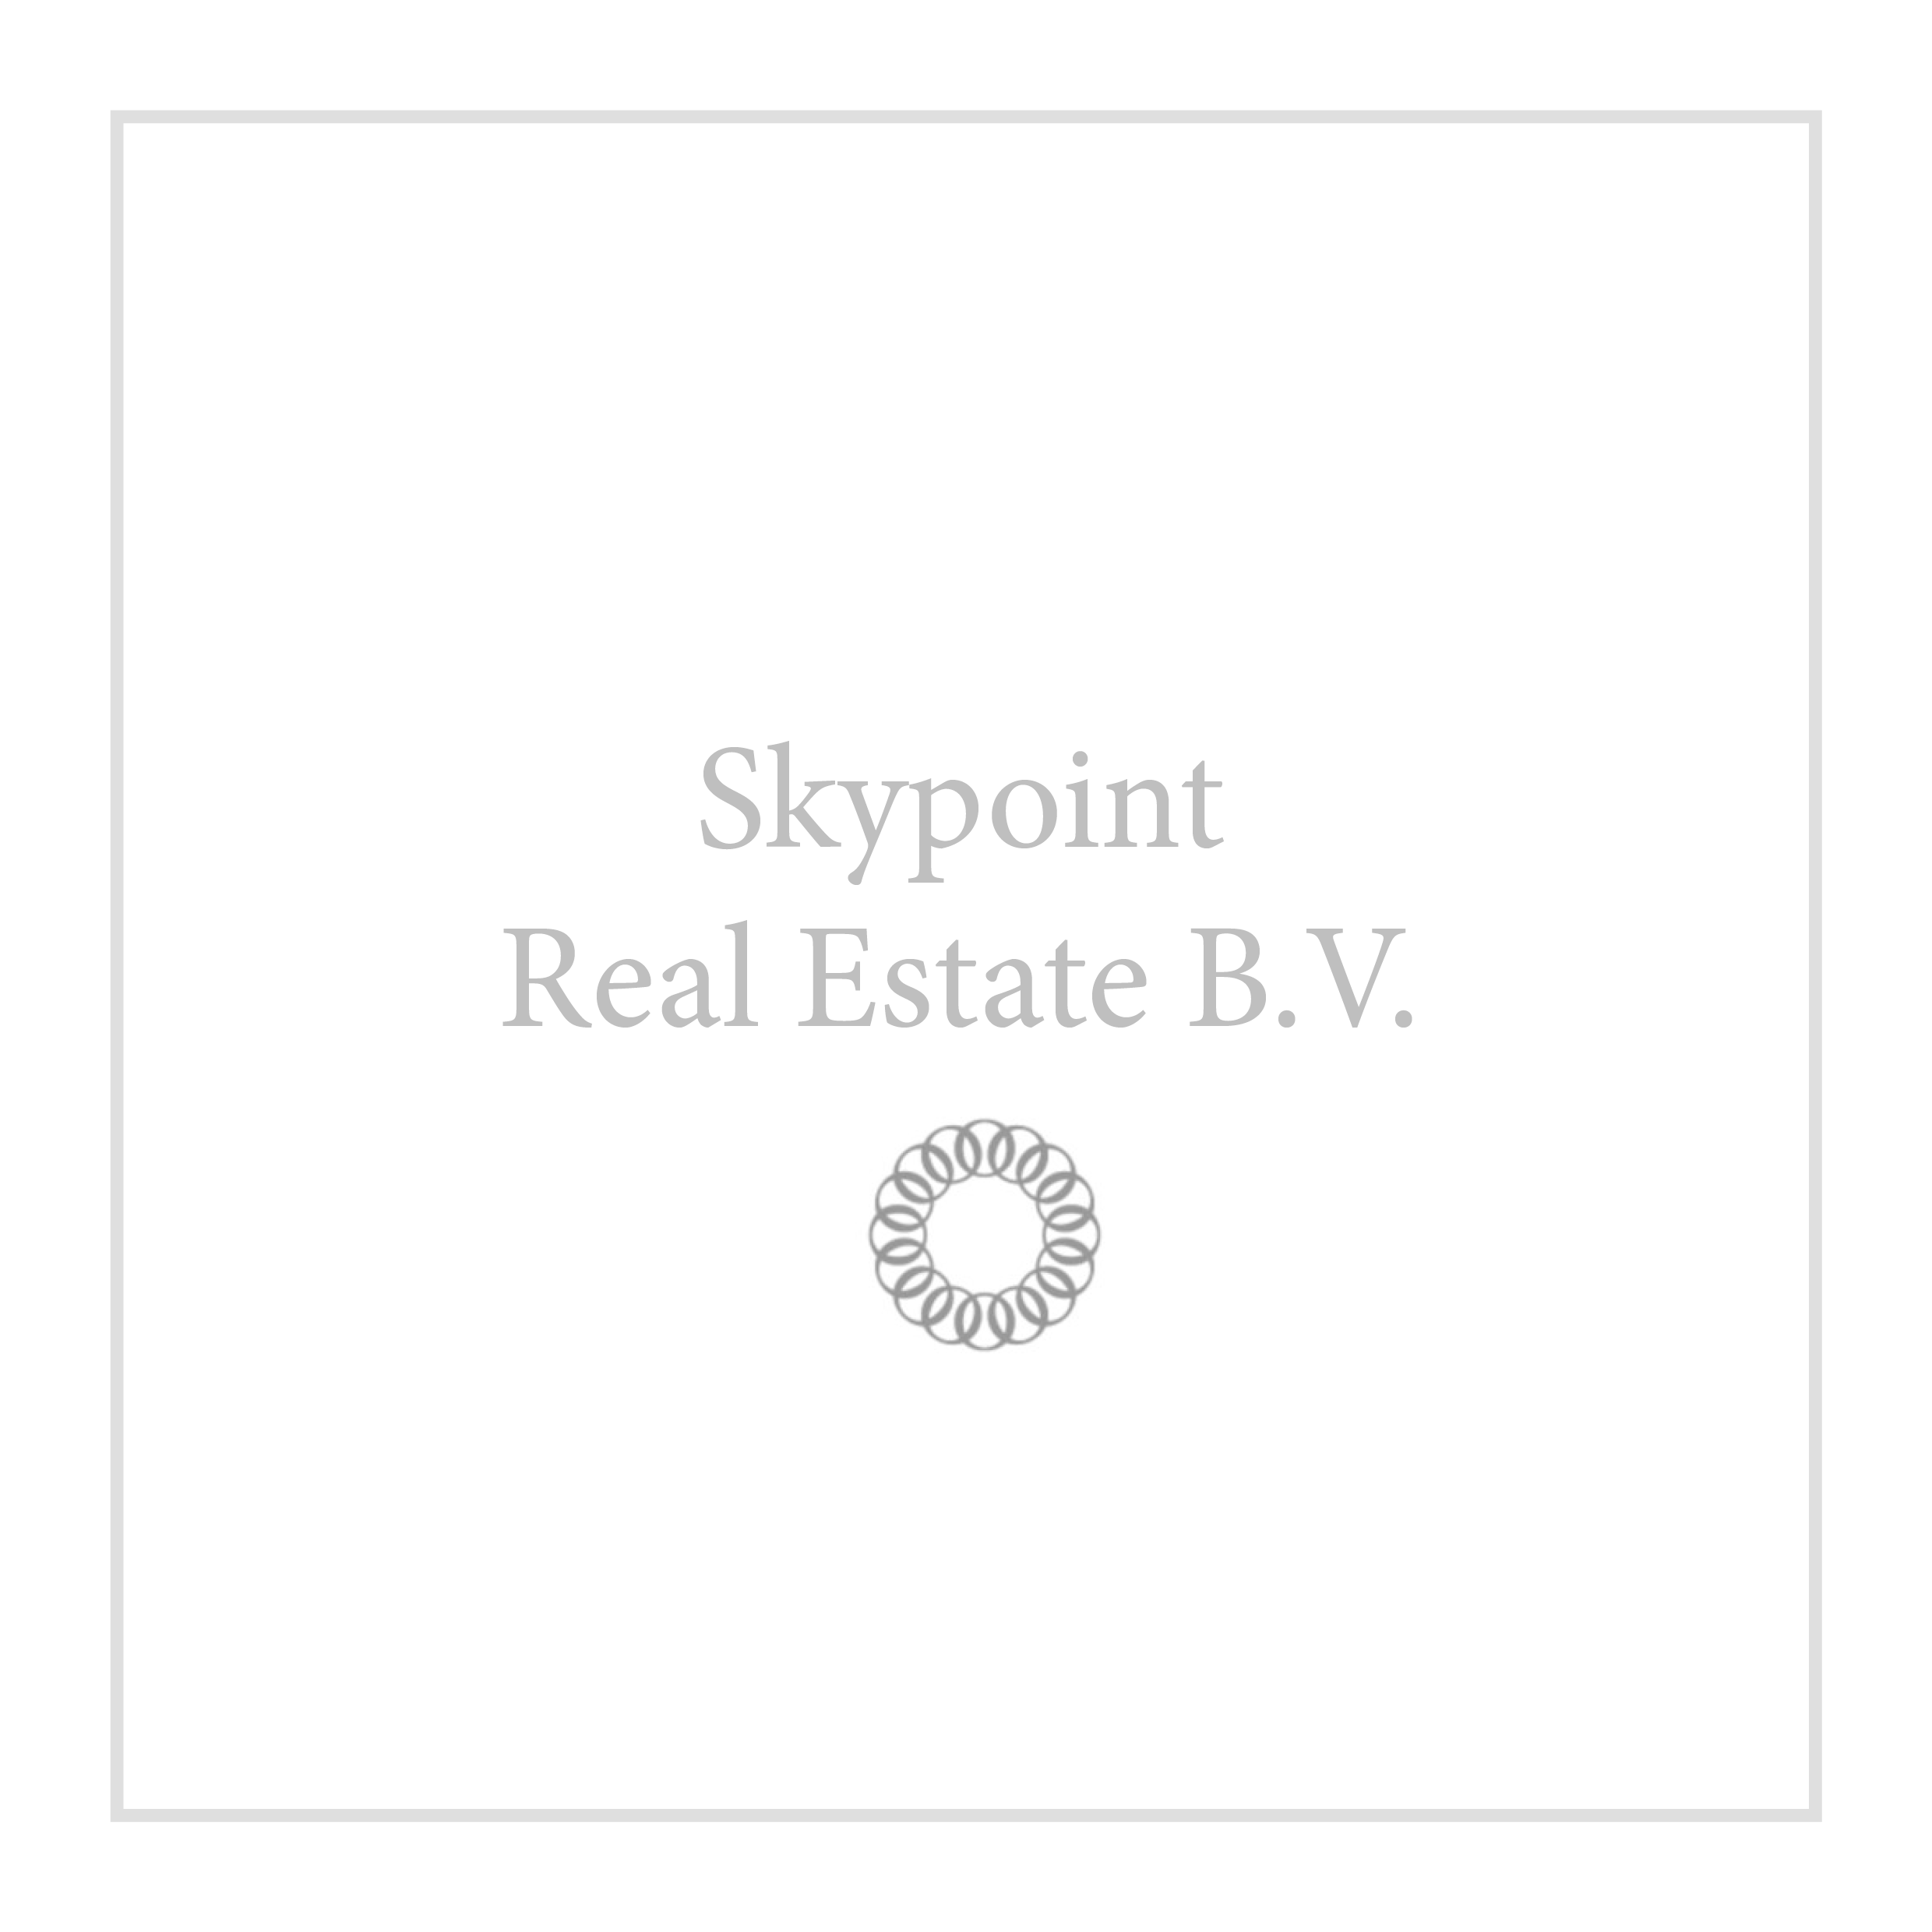 Skypoint Real Estate B.V.